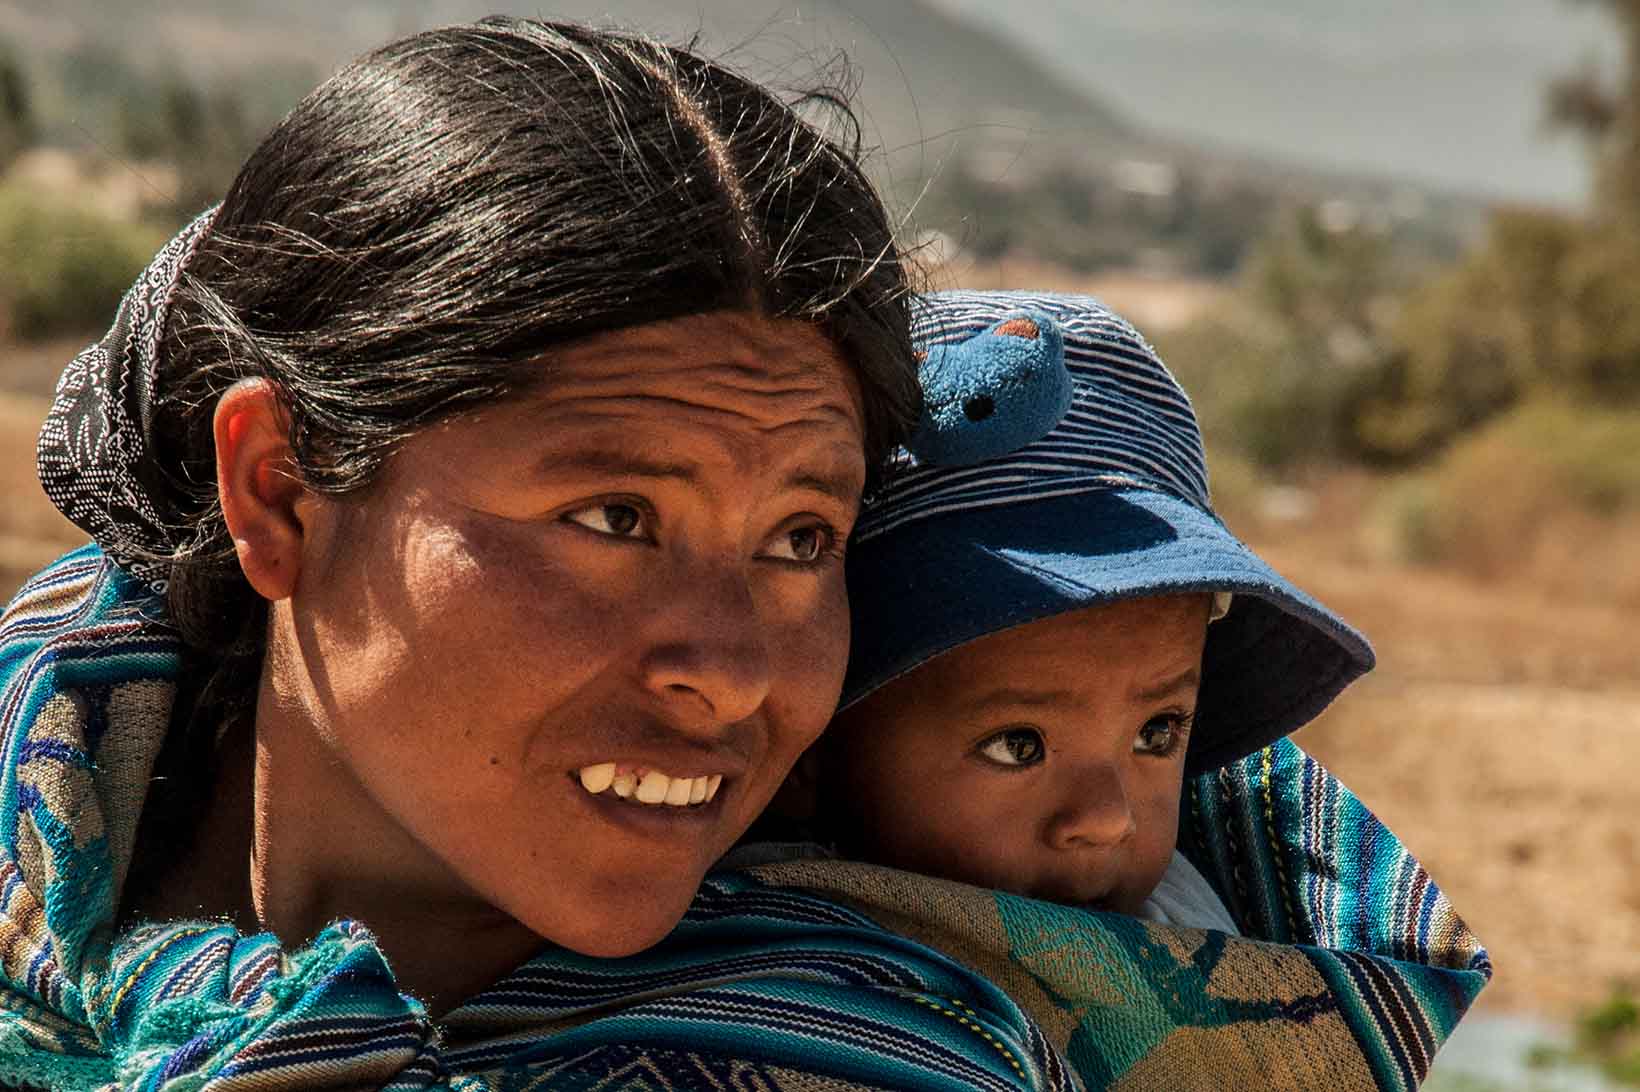 Eine junge indigene Frau aus Bolivien trägt ein Kleinkind in einem Tragetuch auf dem Rücken. Den Kopf haben sie nach links gewendet.